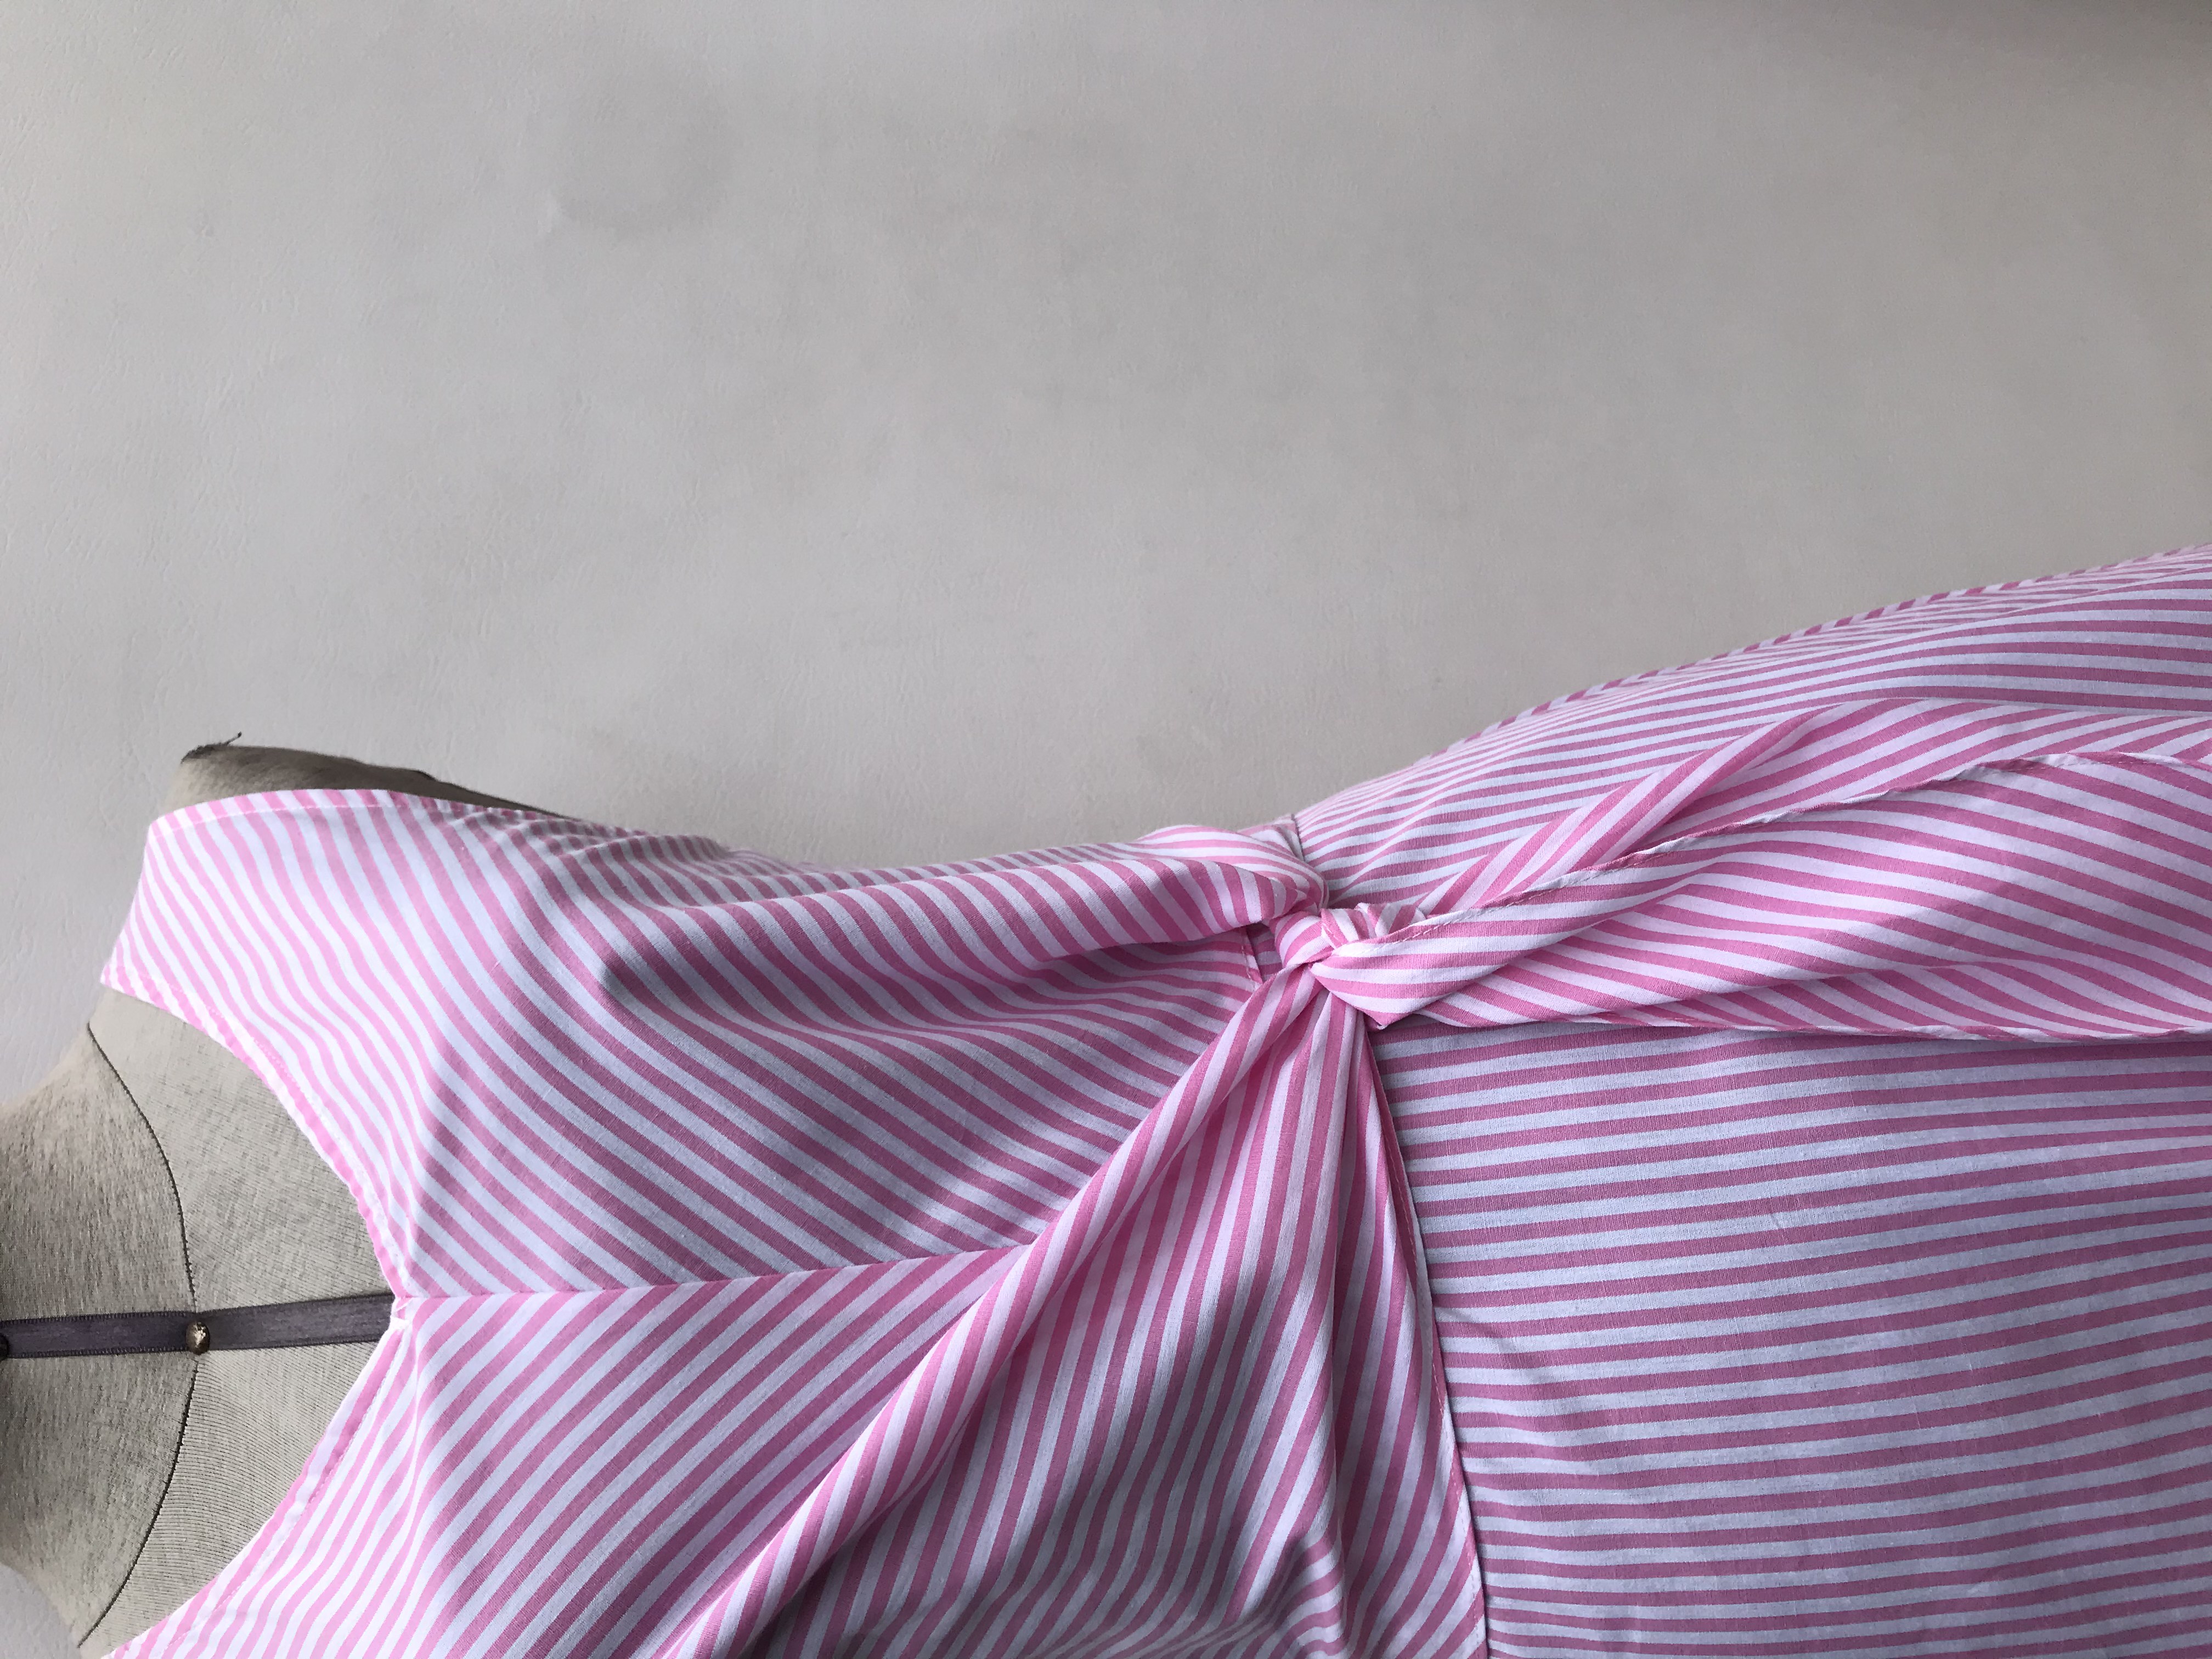 Vestido Shein a rayas blancas y rosadas, se amarra adelante, falda en A y cierre posterior. Cintura 77cm Largo 88cm 